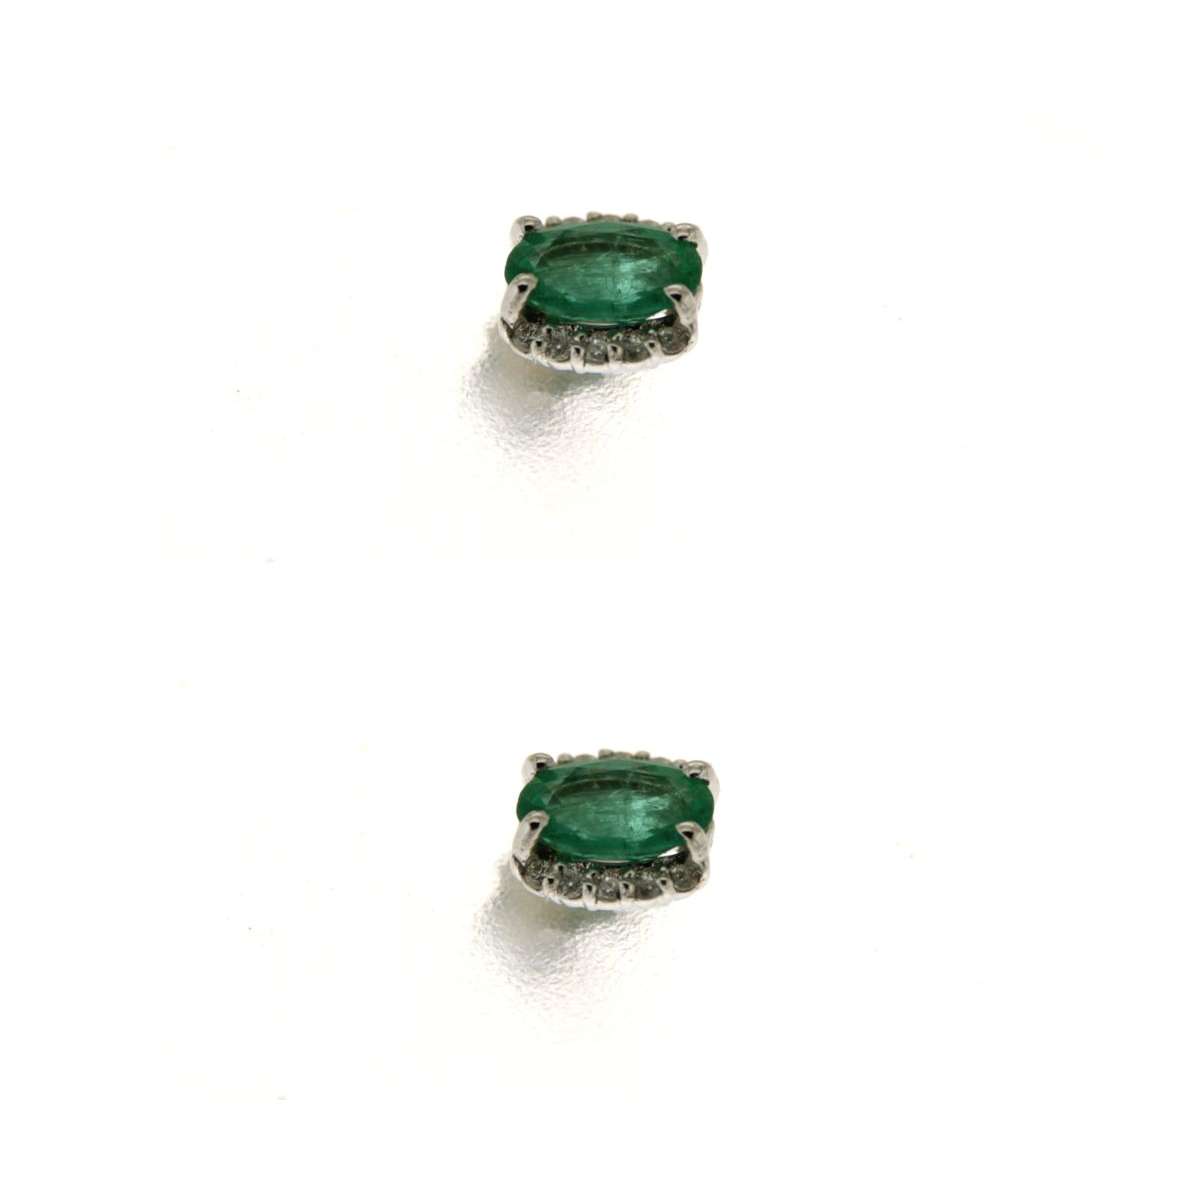 Orecchini con smeraldi ct 0.70 e diamanti ct 0.10 G-VS1